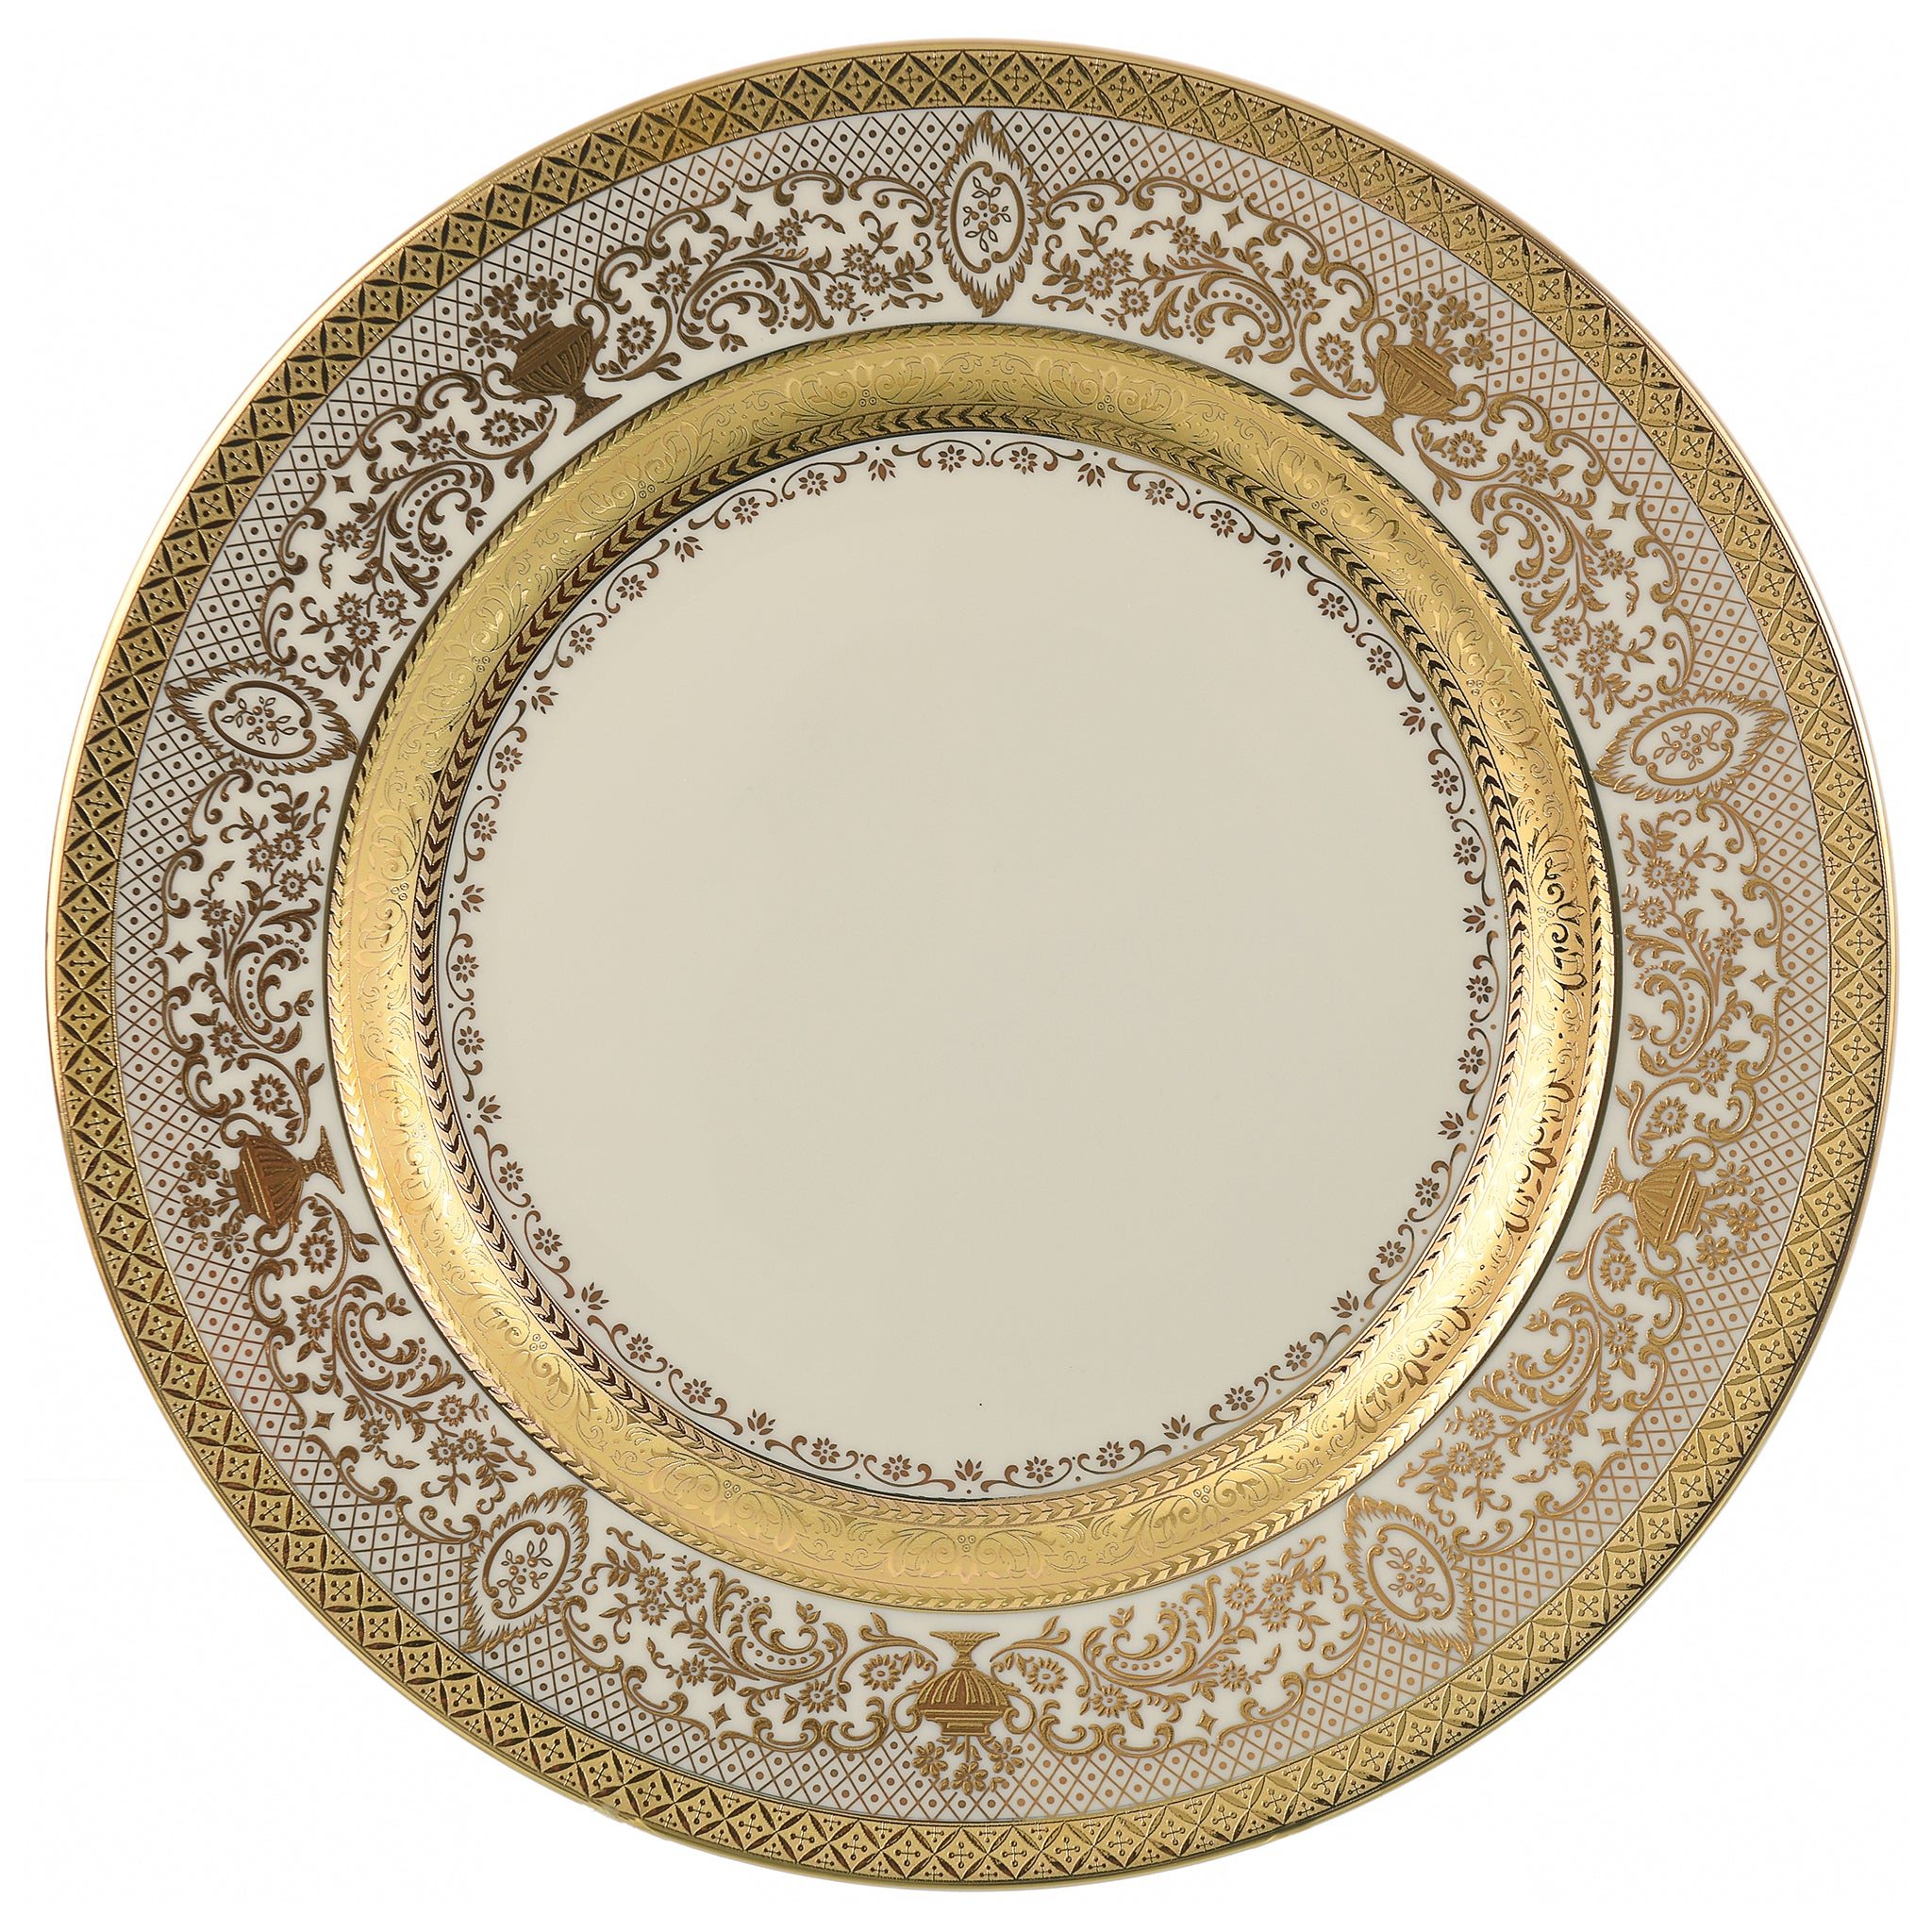 Falkenporzellan - Dinner Set 112 Pieces - Porcelain - Beige & Gold - 13000323